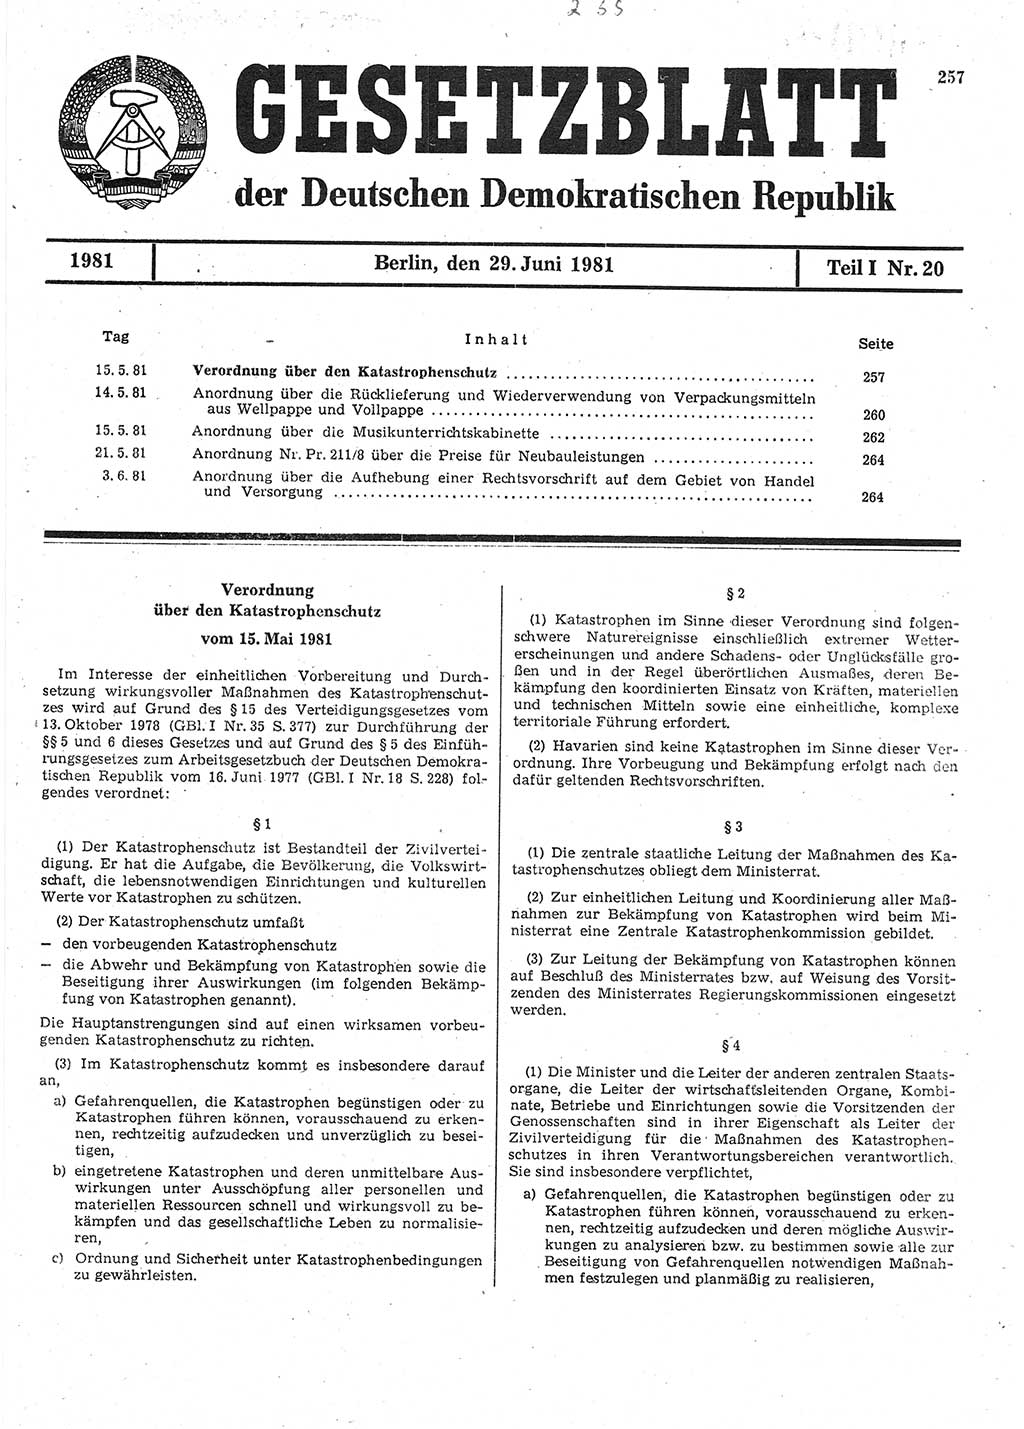 Gesetzblatt (GBl.) der Deutschen Demokratischen Republik (DDR) Teil Ⅰ 1981, Seite 257 (GBl. DDR Ⅰ 1981, S. 257)